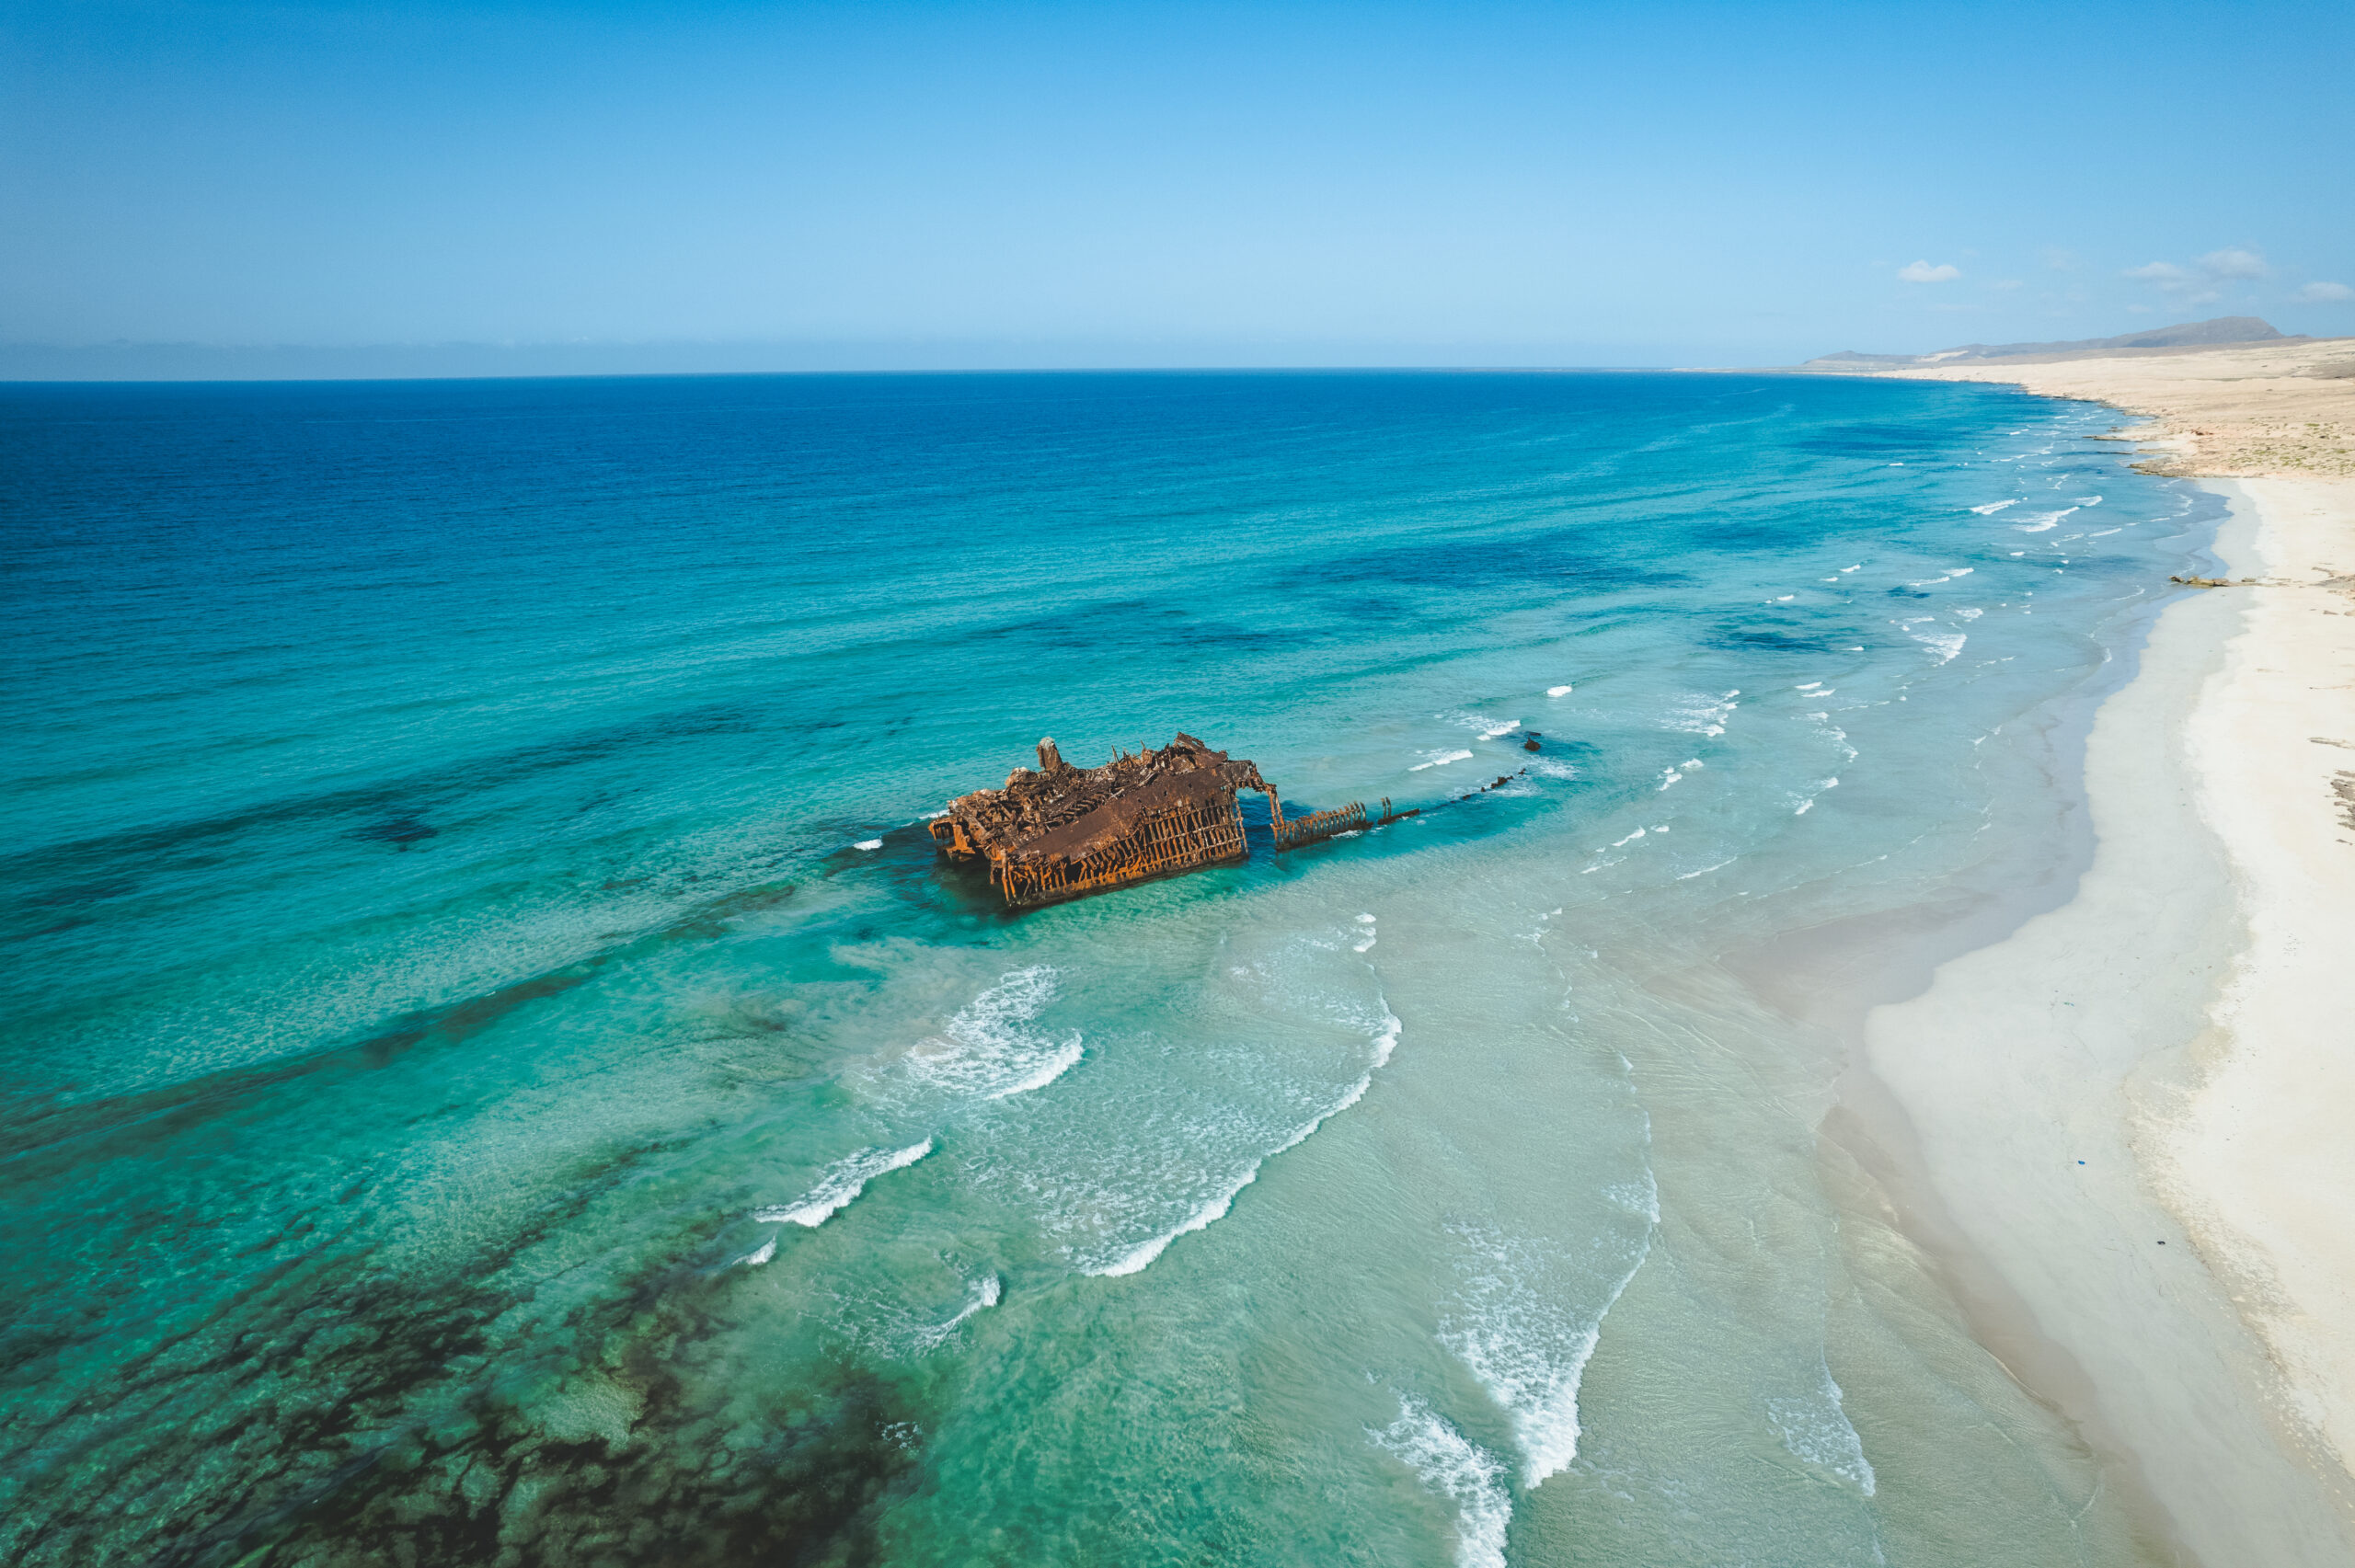 Tajuplná pláž s vrakom lode, Cabo Santa Maria, Boa Vista, Kapverdy - Dovolenka s CK Hydrotour